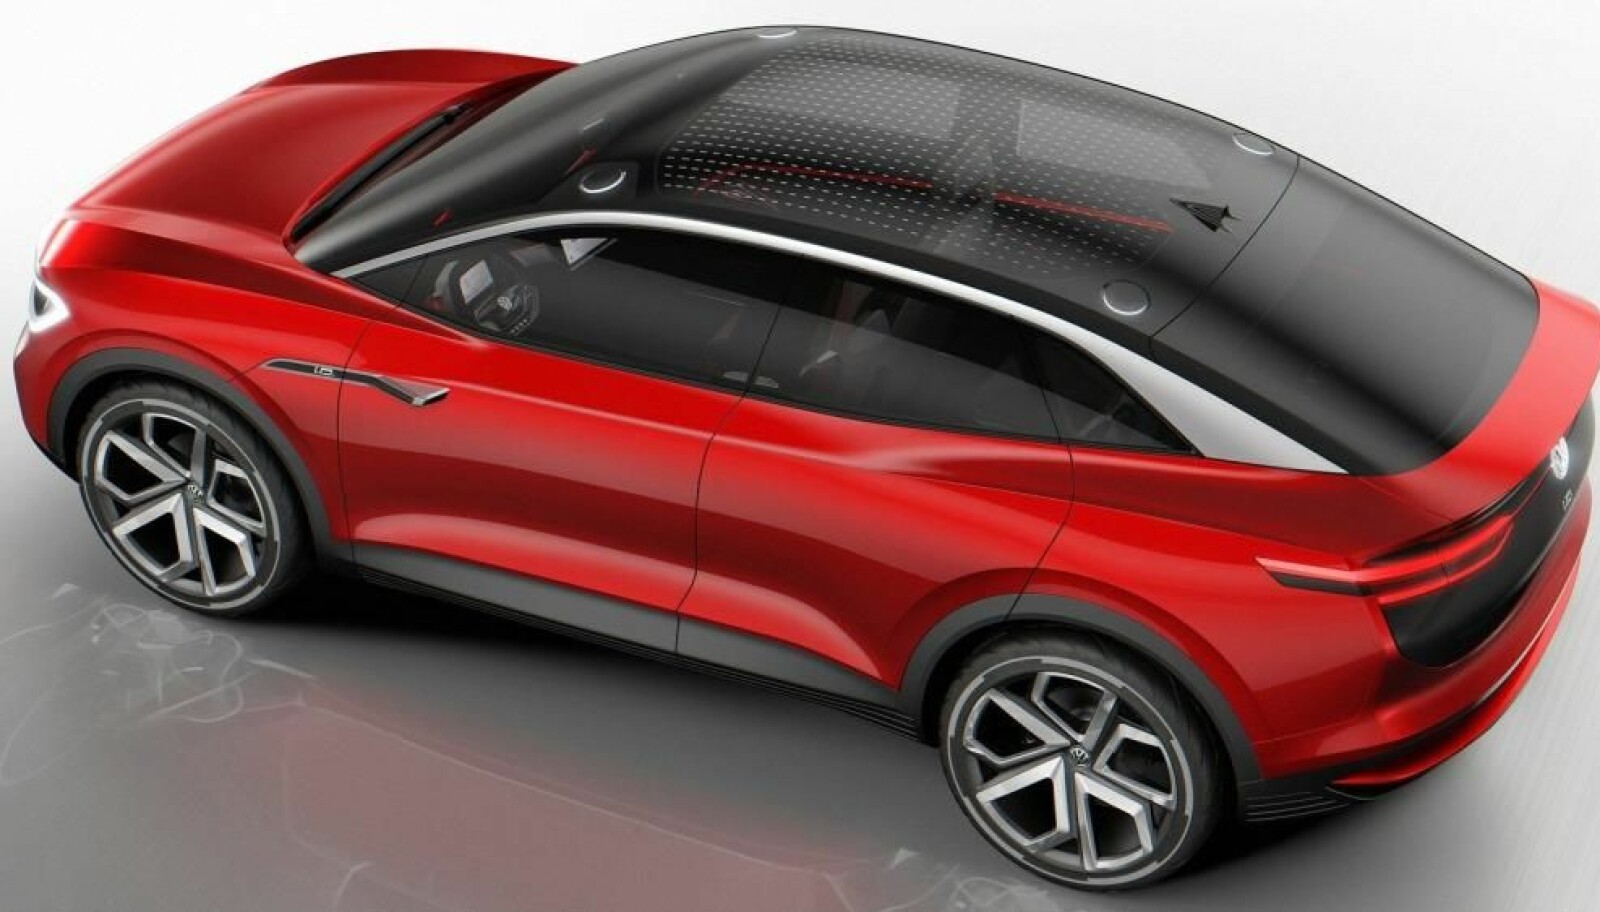 <b>VIZZION</b>: Volkswagen kommer med en rekke elektriske biler de kommende årene. VIZZION på bildet over er først ut av SUV-ene, så følger en større utgave med sju seter i 2022.